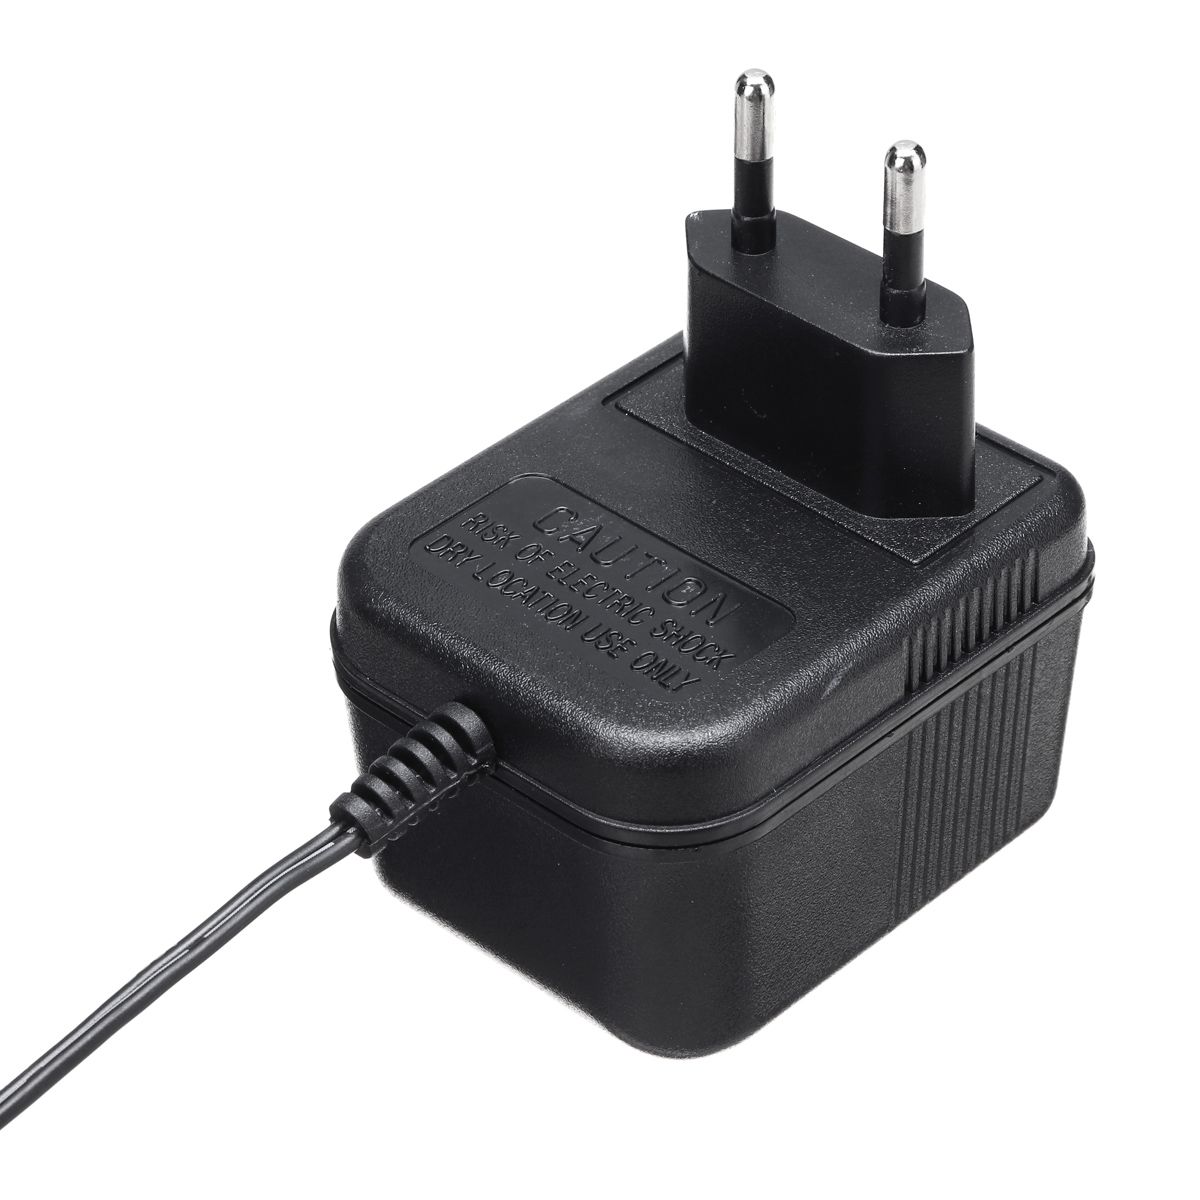 AC220V-Power-Supply-Adapter-for-Video-Ring-Doorbell-EU-Plug-1390783